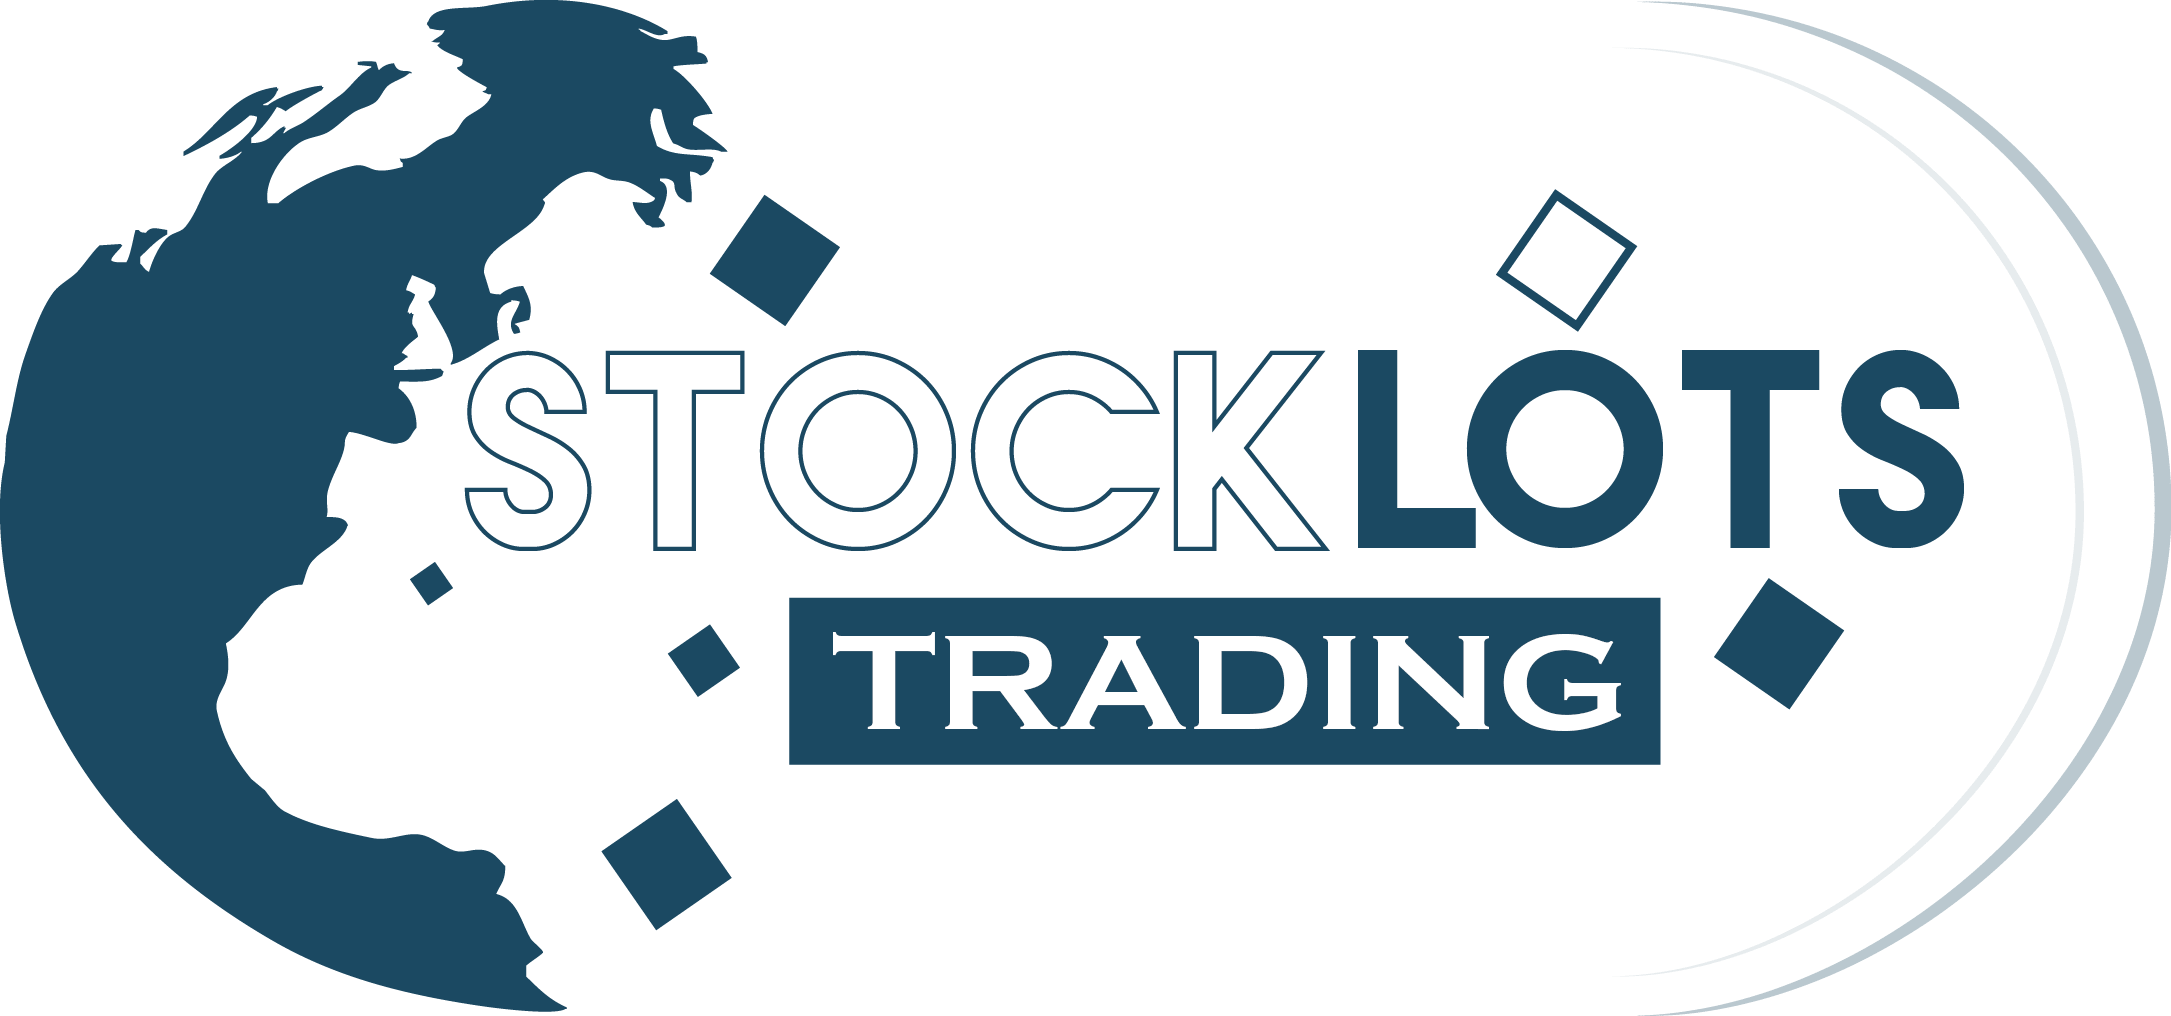 Stocklots Trading Alkmaar 